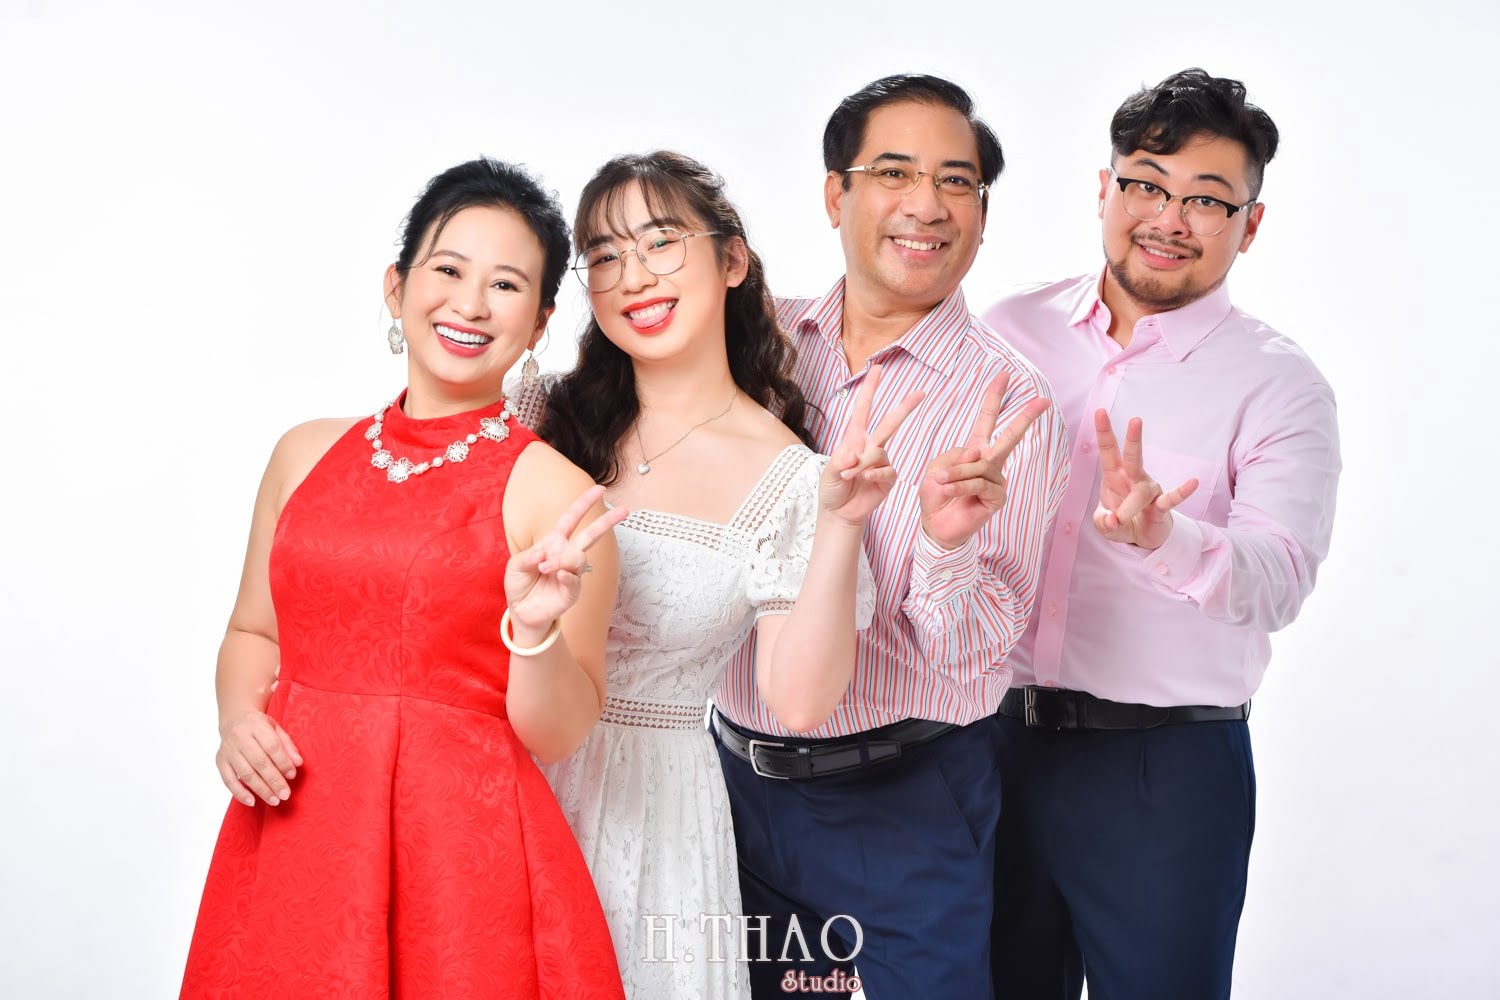 Anh gia dinh 4 nguoi 18 min - Dịch vụ chụp ảnh kỷ niệm ngày cưới - HThao Studio